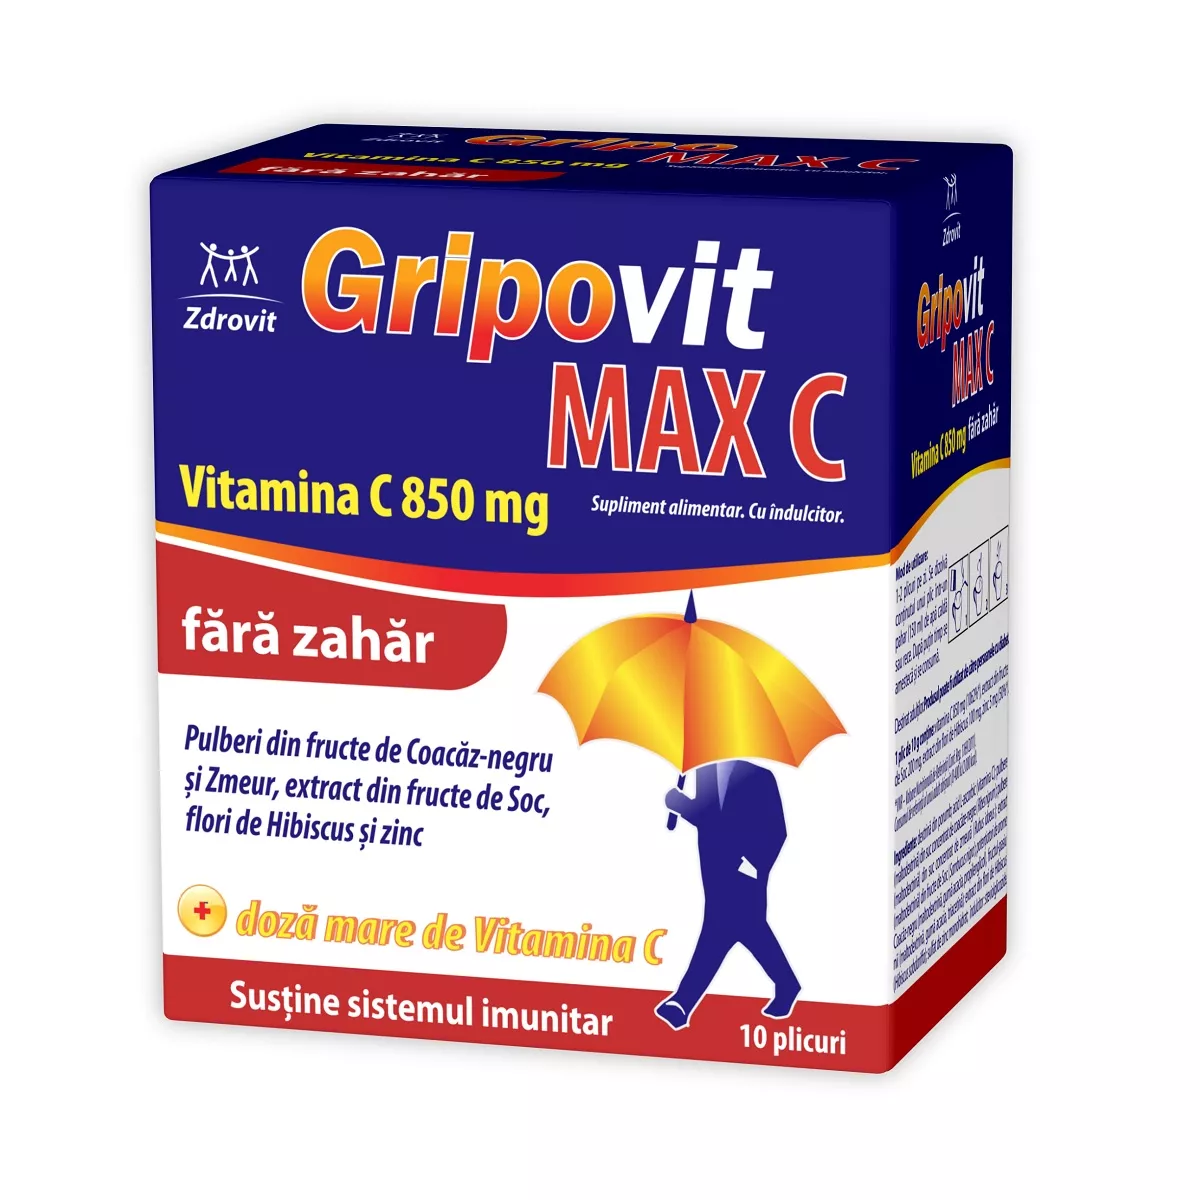 Gripovit Max C fara zahar x 10pl (Zdrovit), [],epastila.ro